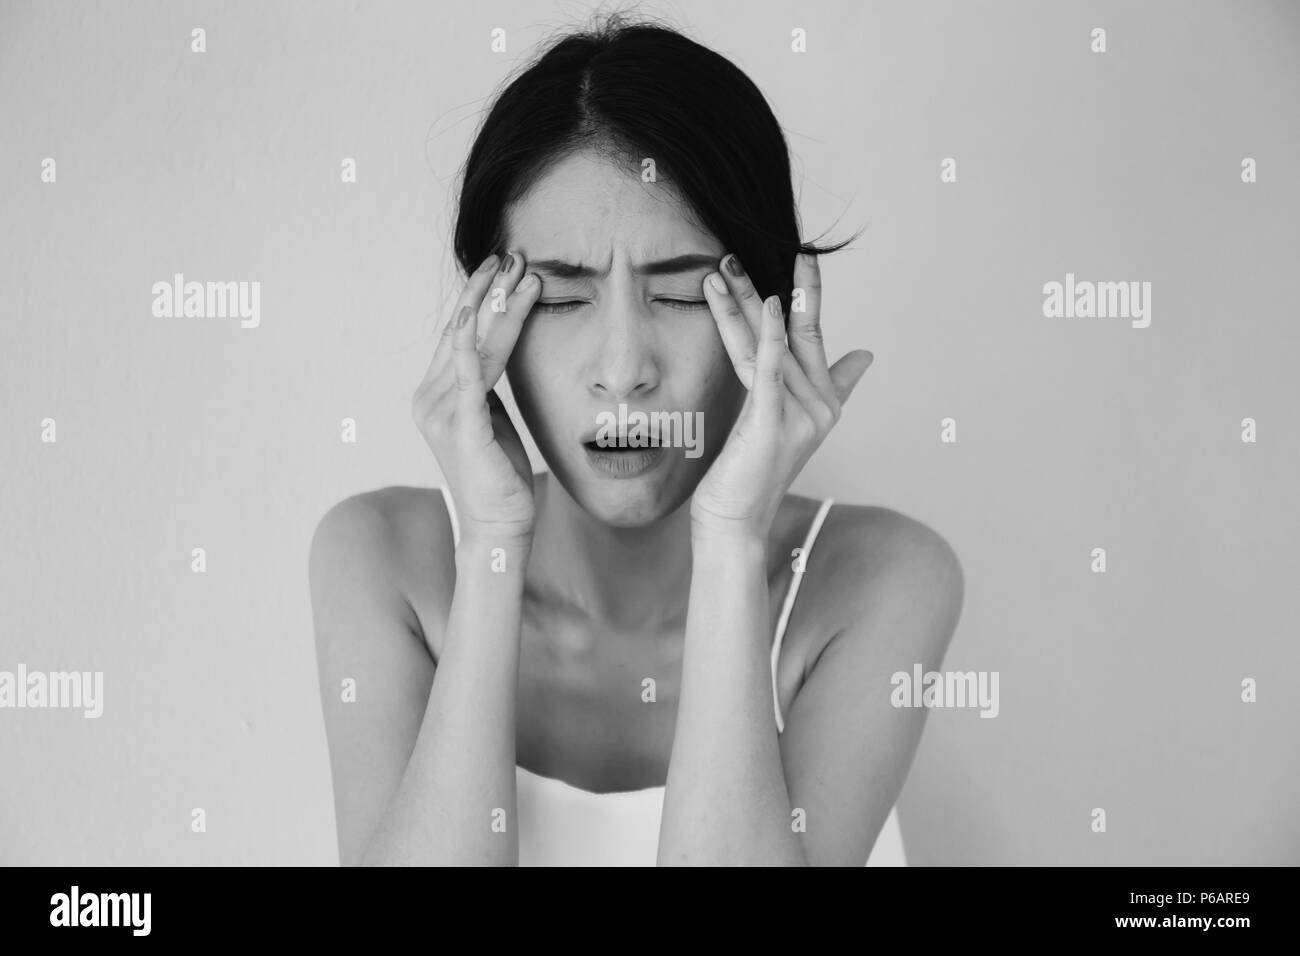 Junge asiatische Frau mit Schmerzen am Auge und Soreness in schwarzen und weißen Ton - Gesundheitswesen und medizinische Konzept Stockfoto